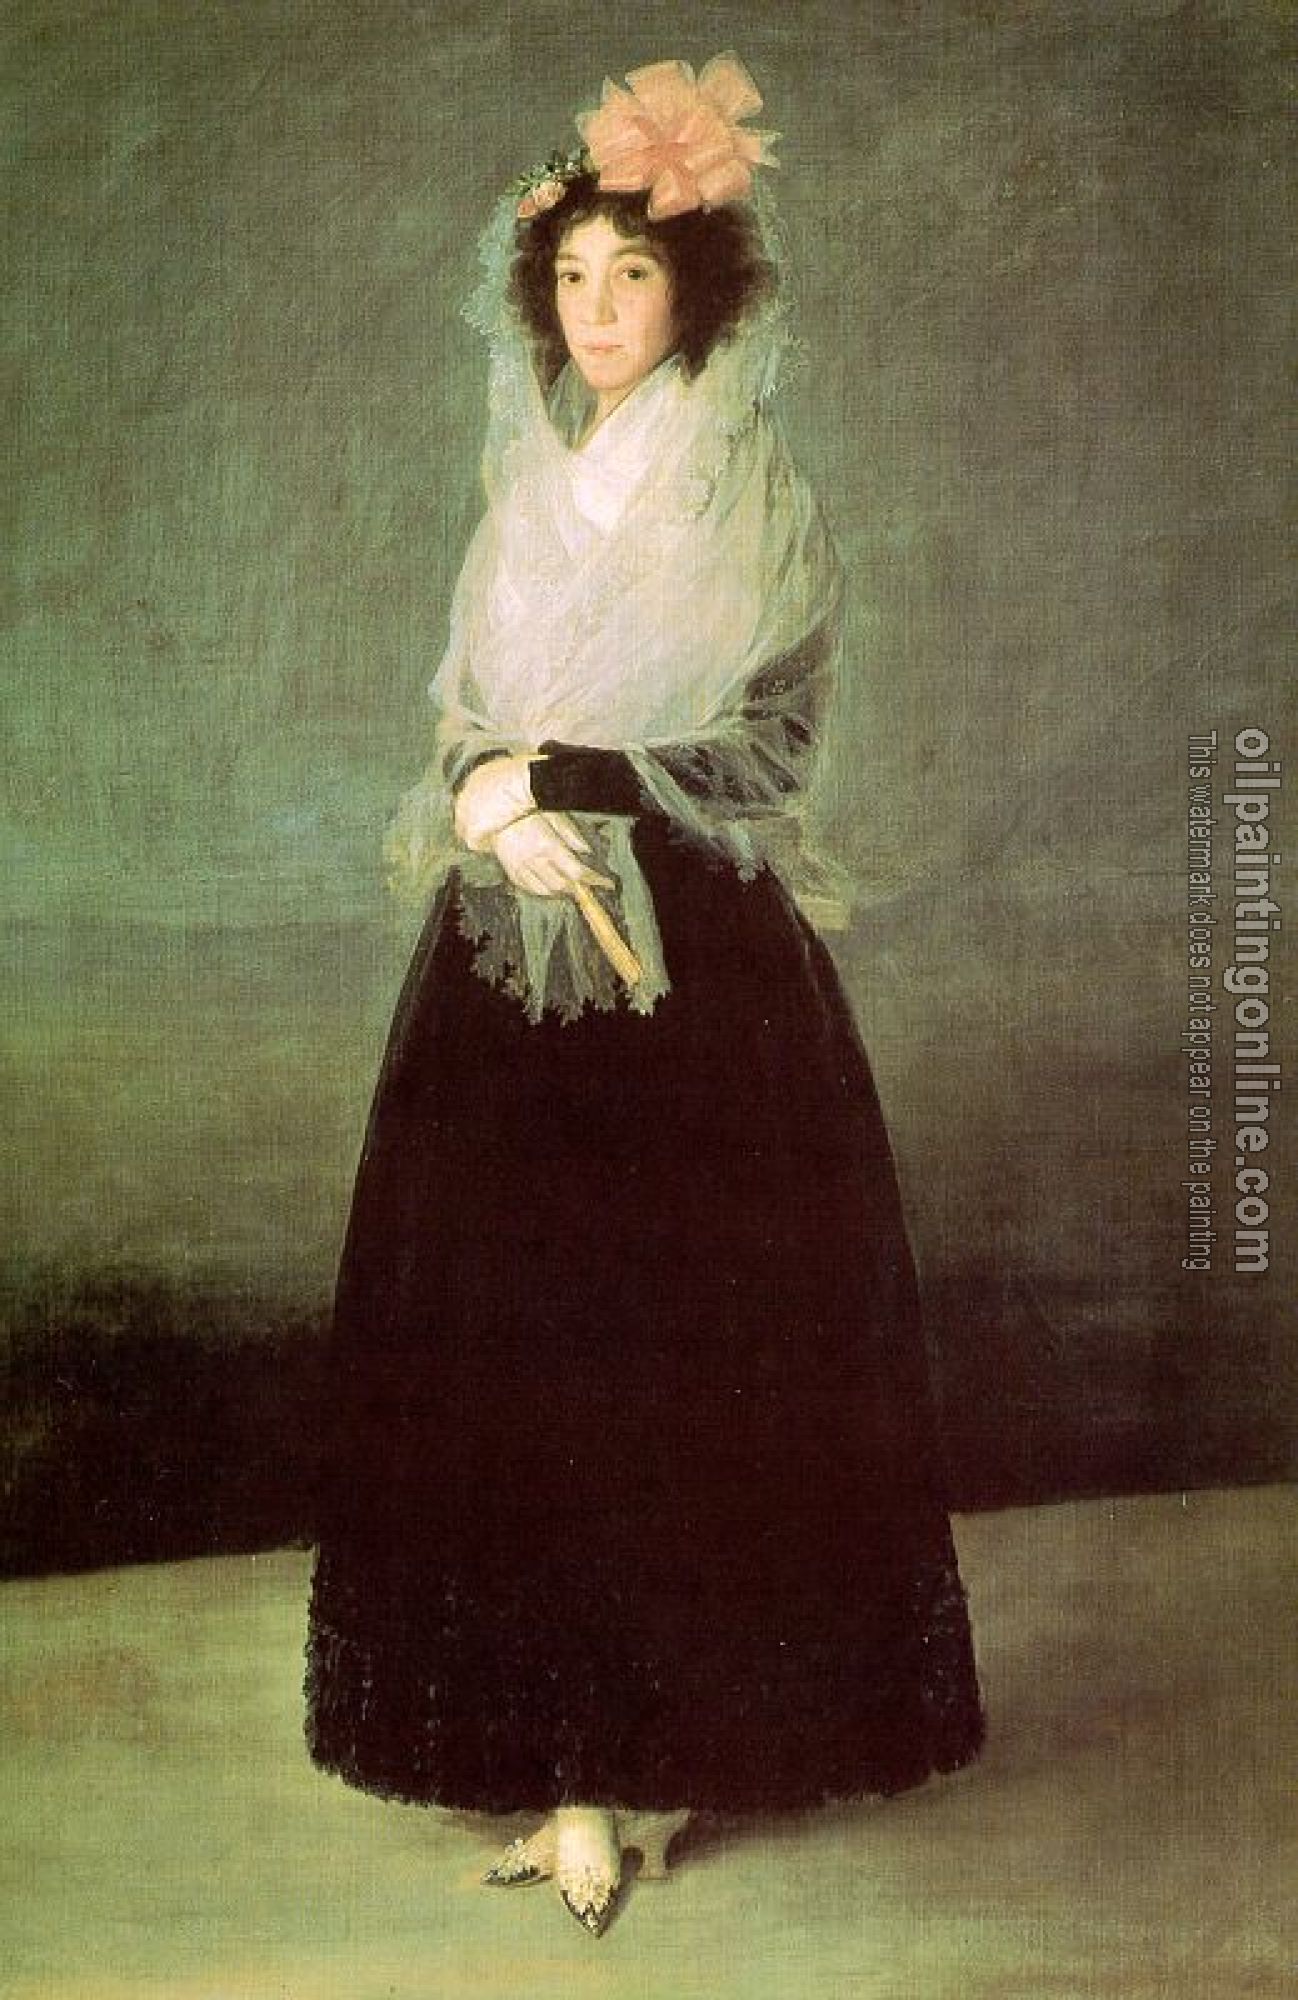 Goya, Francisco de - The Countess of El Carpio